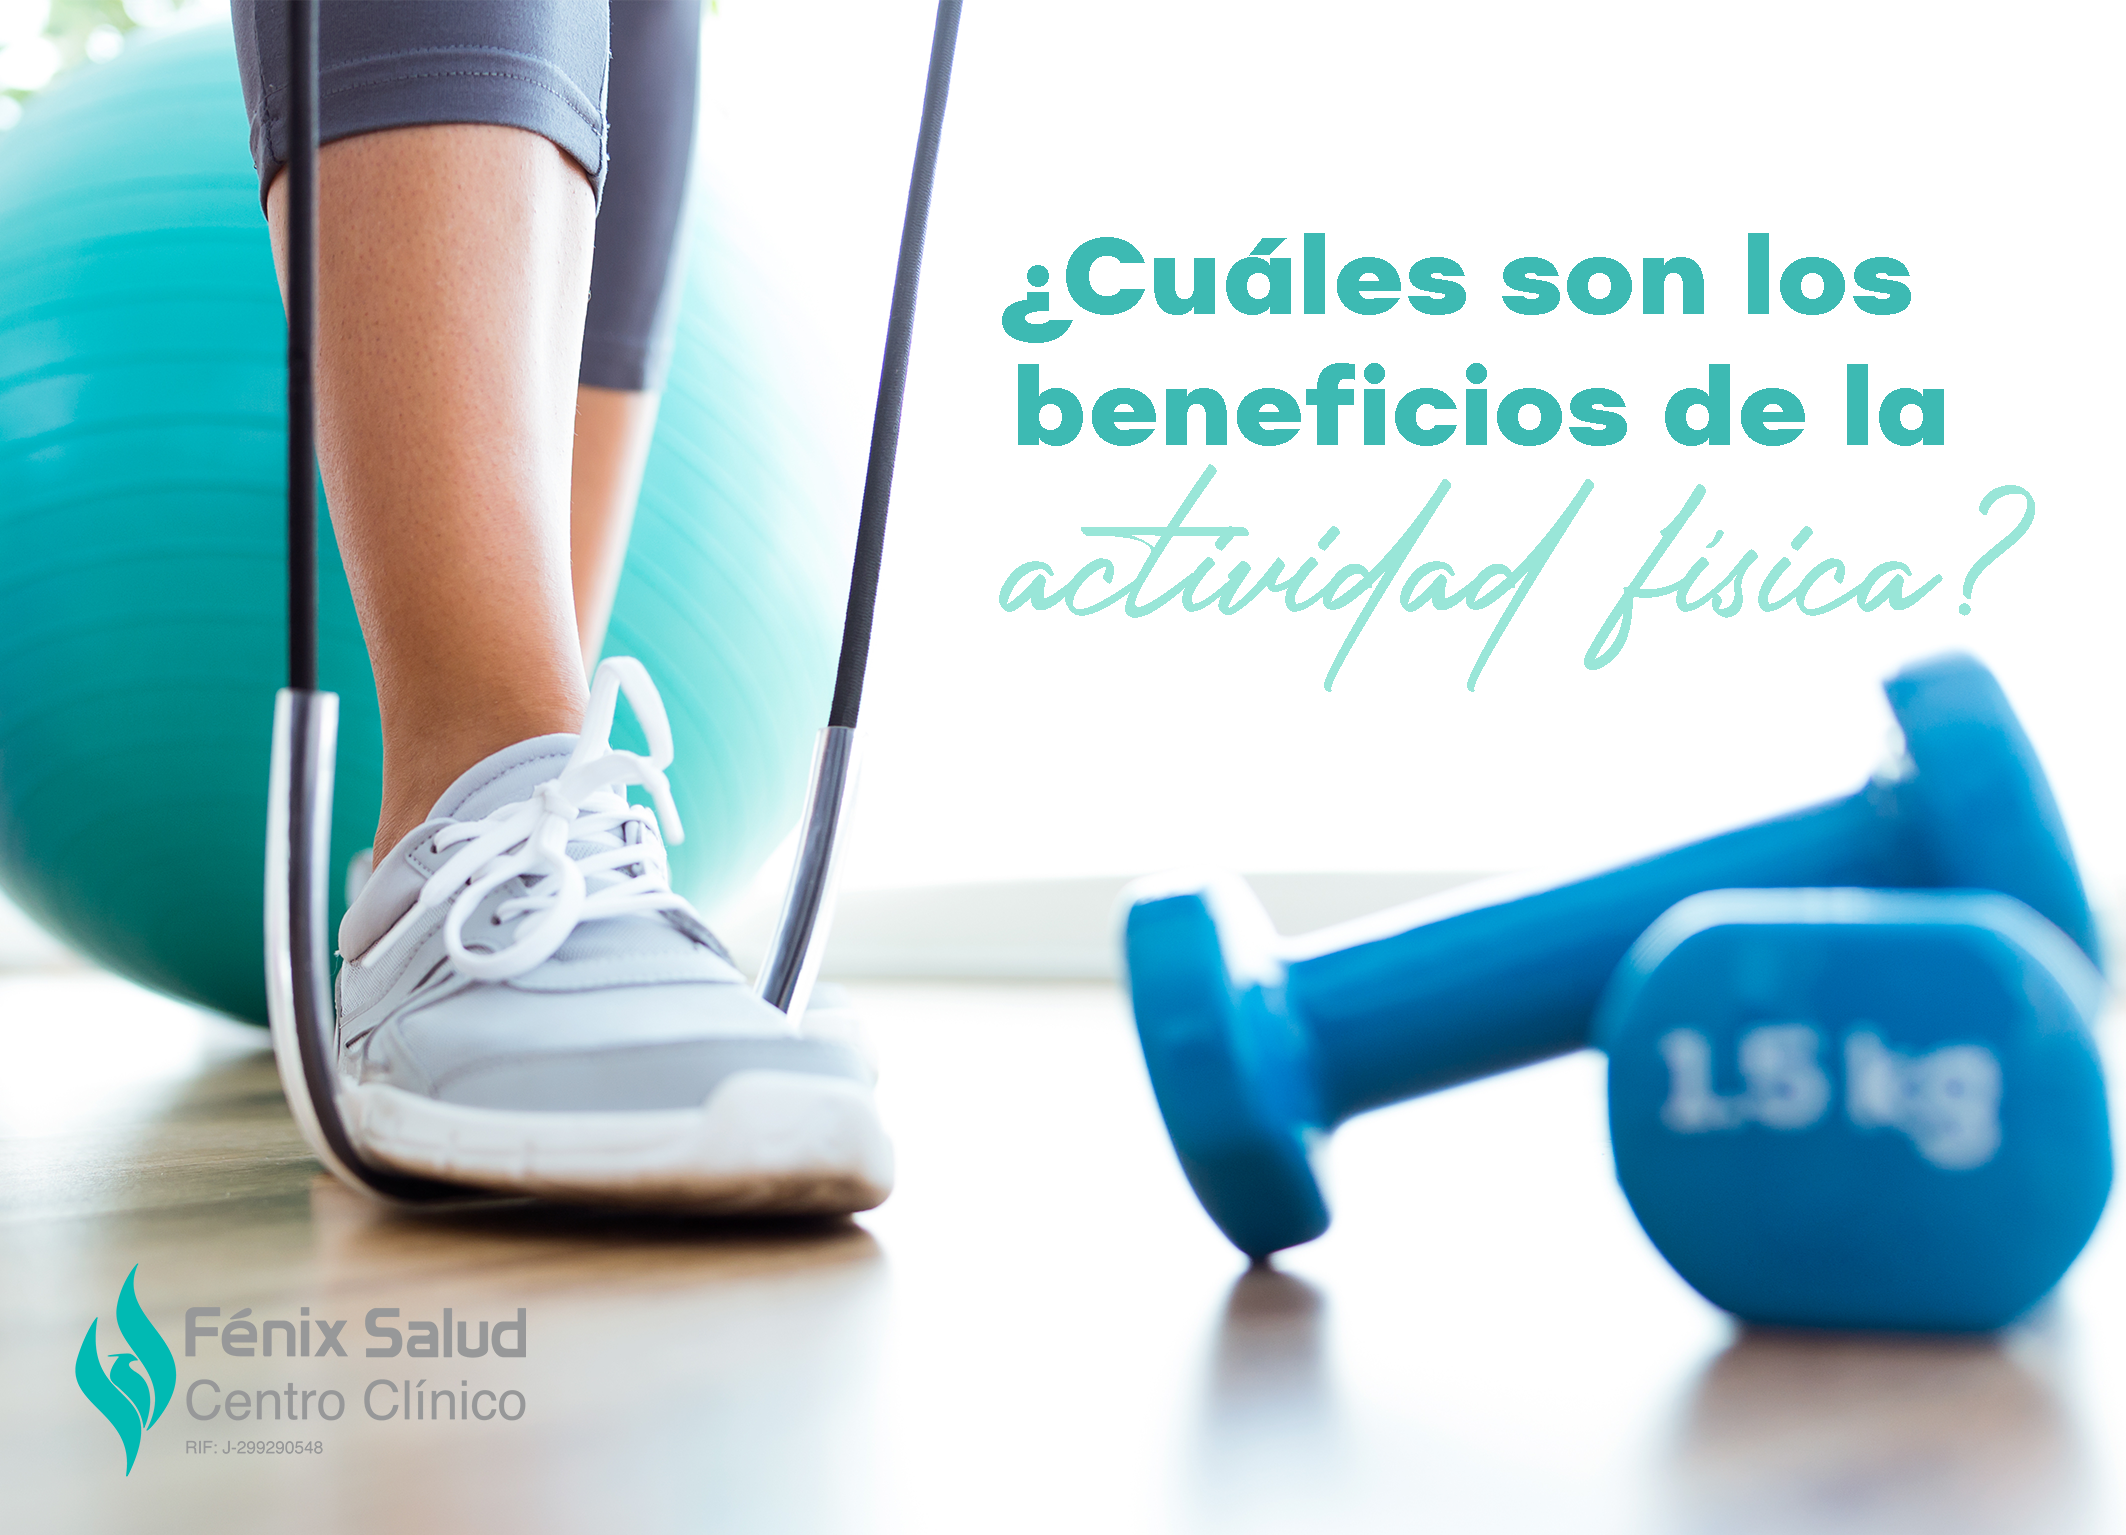 Cuáles son los beneficios de la actividad física? - Centro Clínico Fenix  Salud